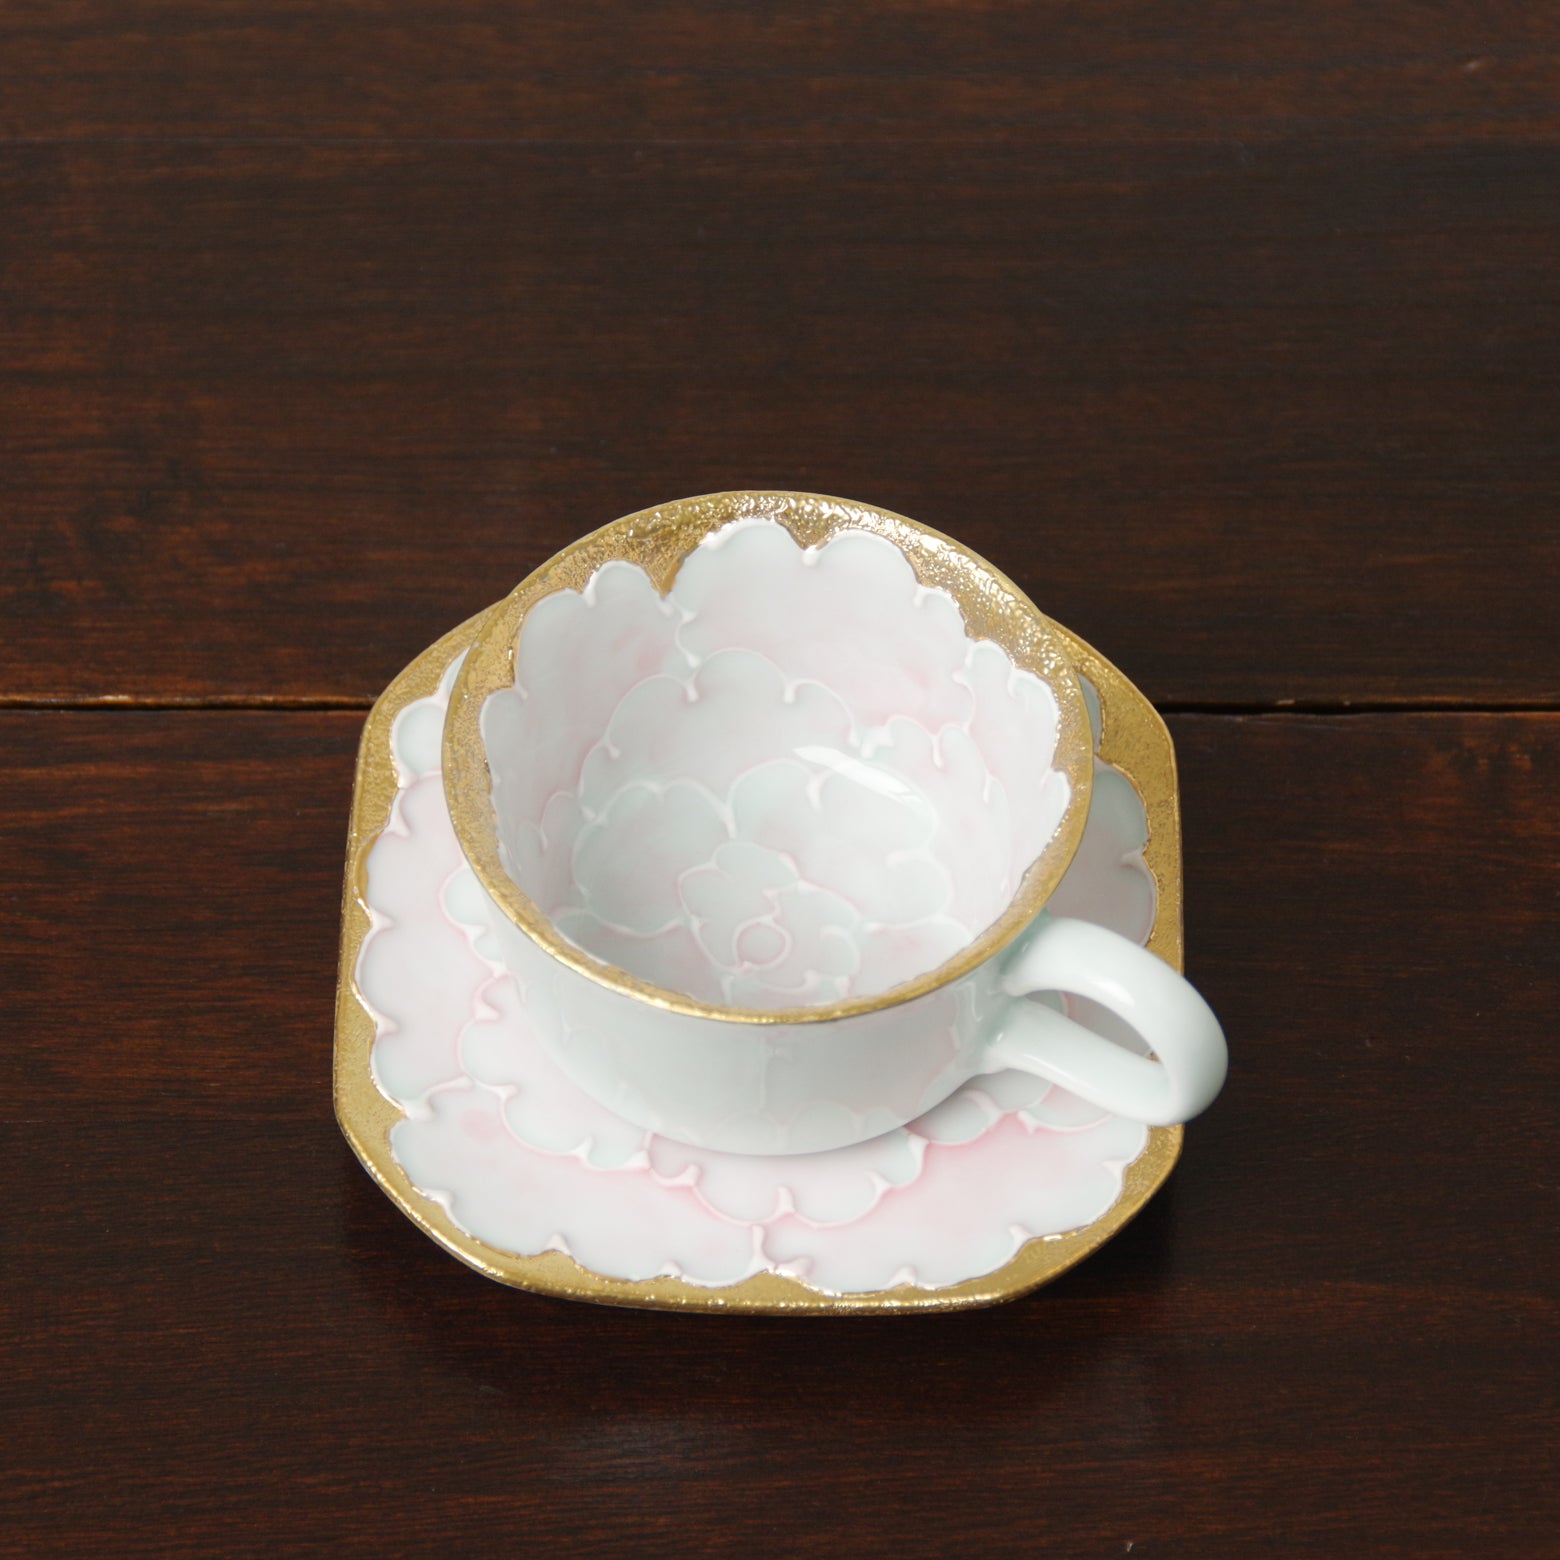 有田焼 金牡丹(ピンク) デミタス碗皿 75ml Bunzan コーヒーカップ Studio1156